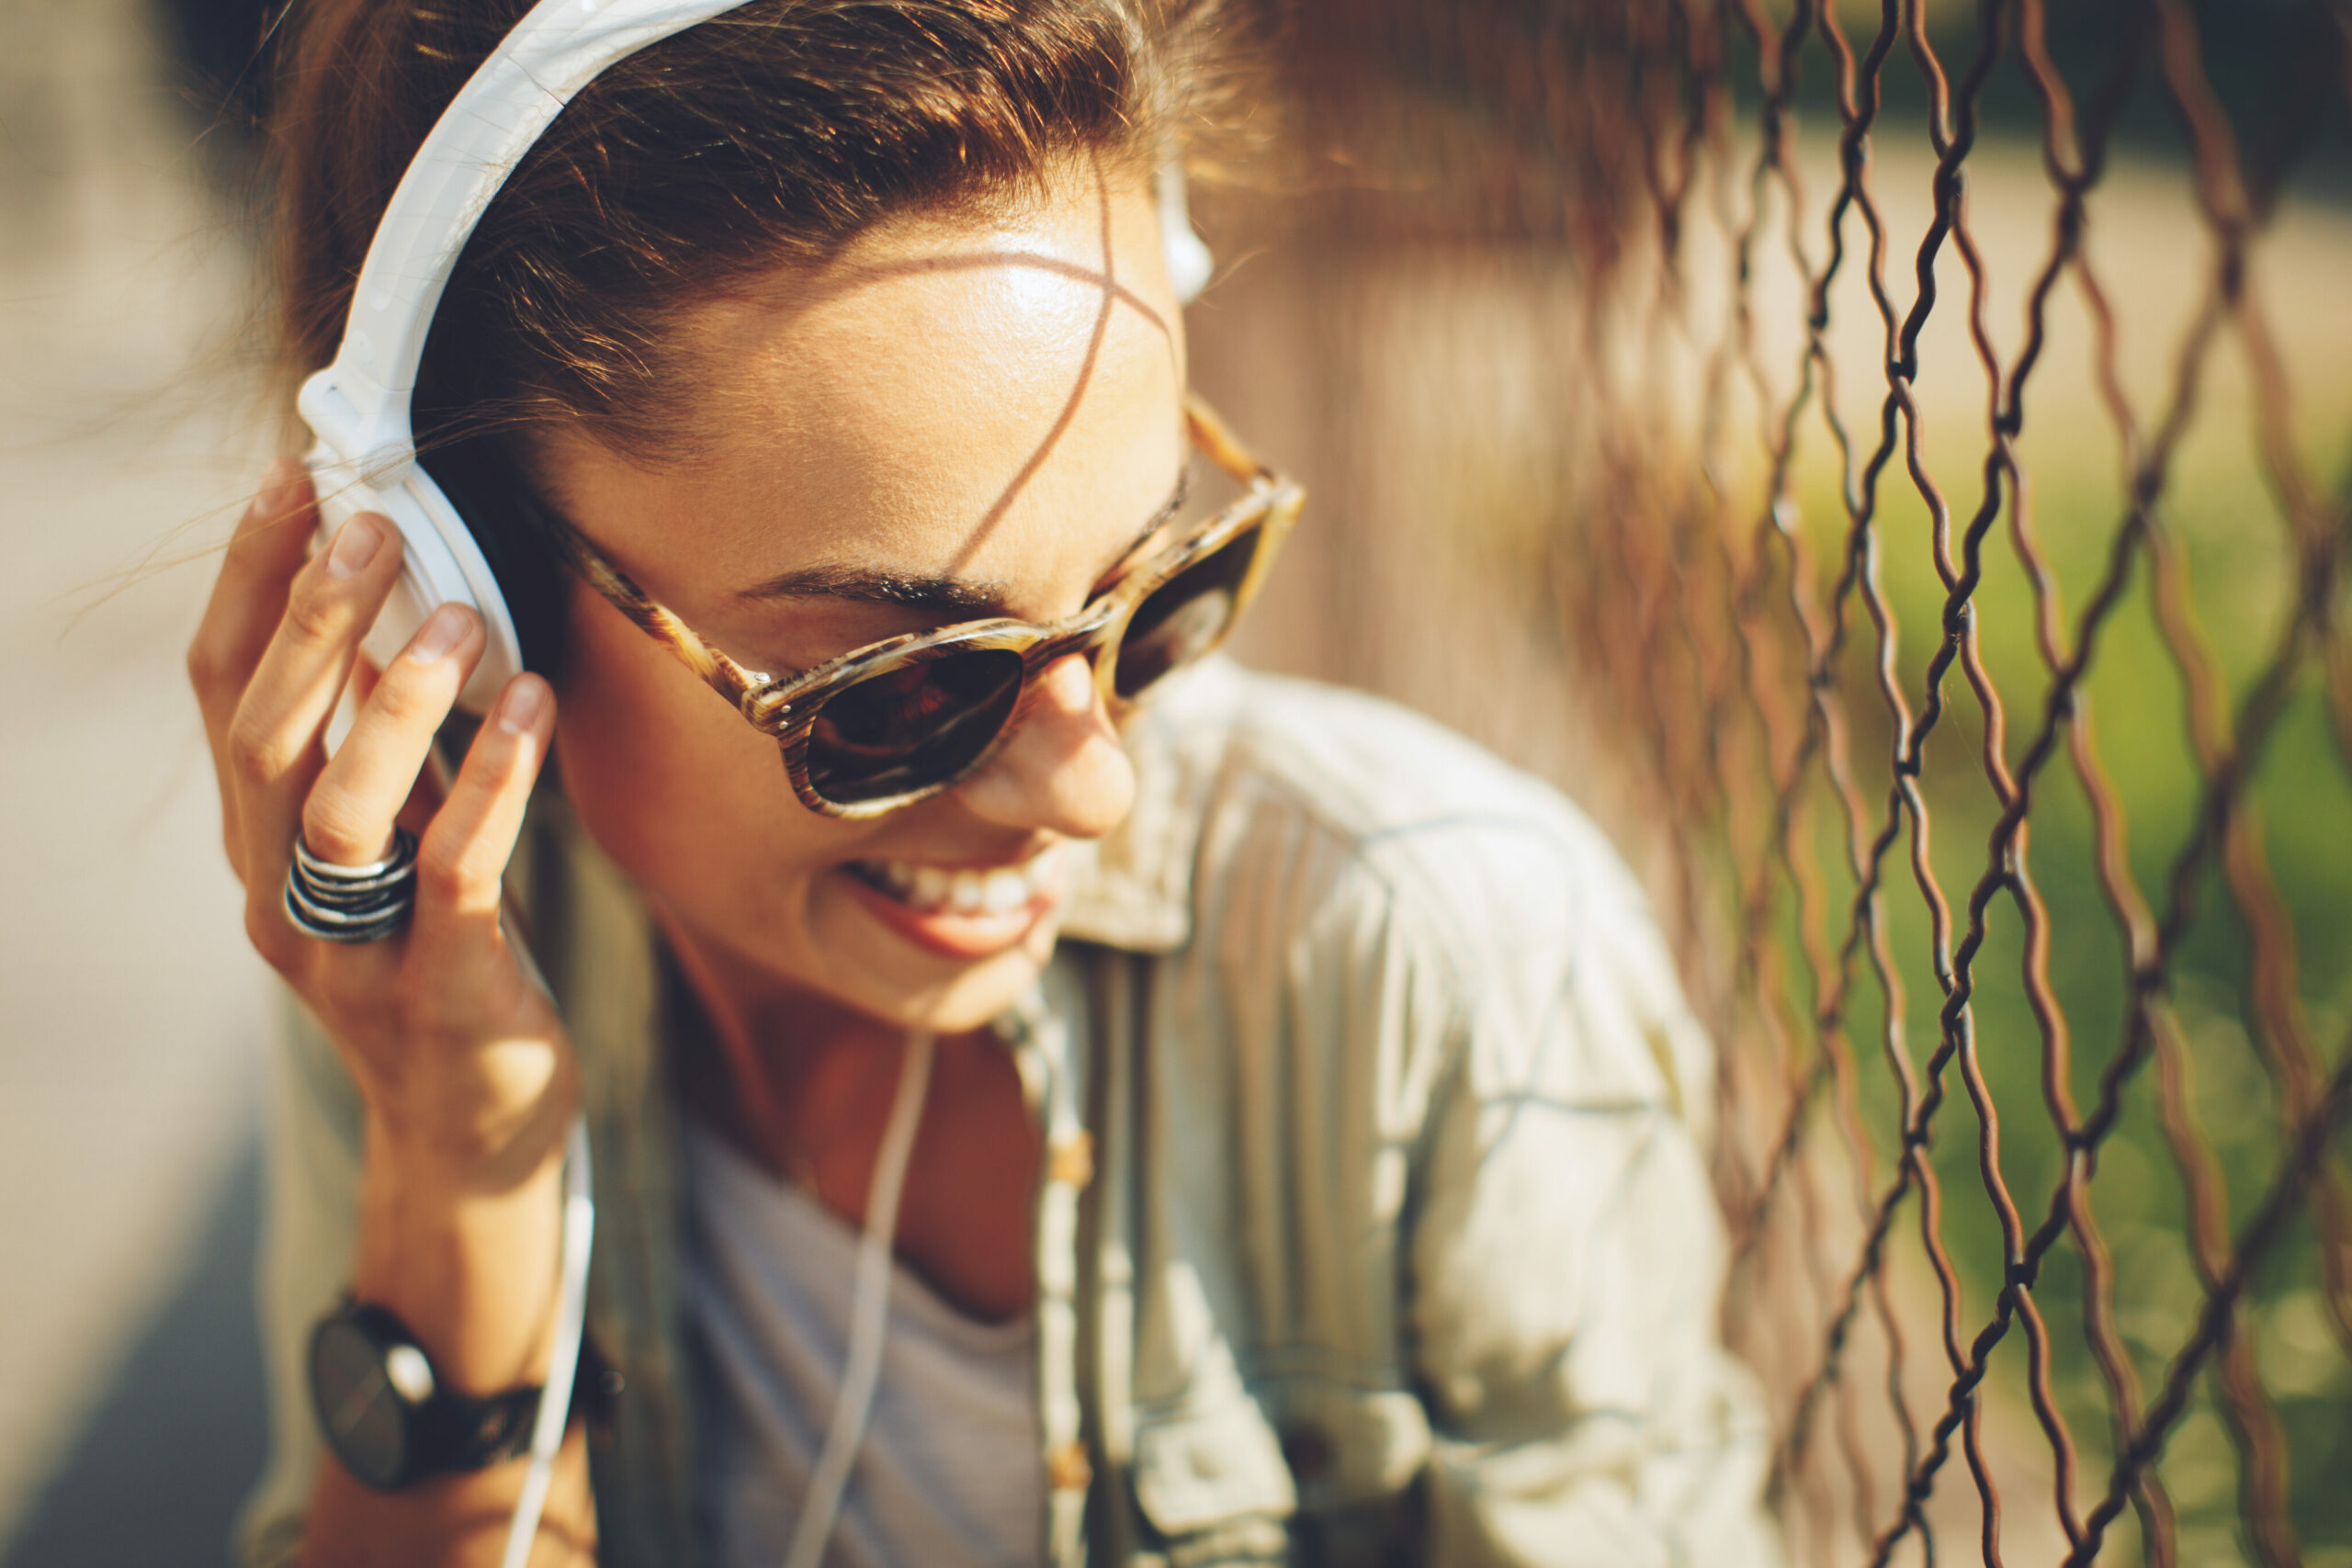 Musik und Gesundheit: junge Frau hört über Kopfhörer Musik und lächelt